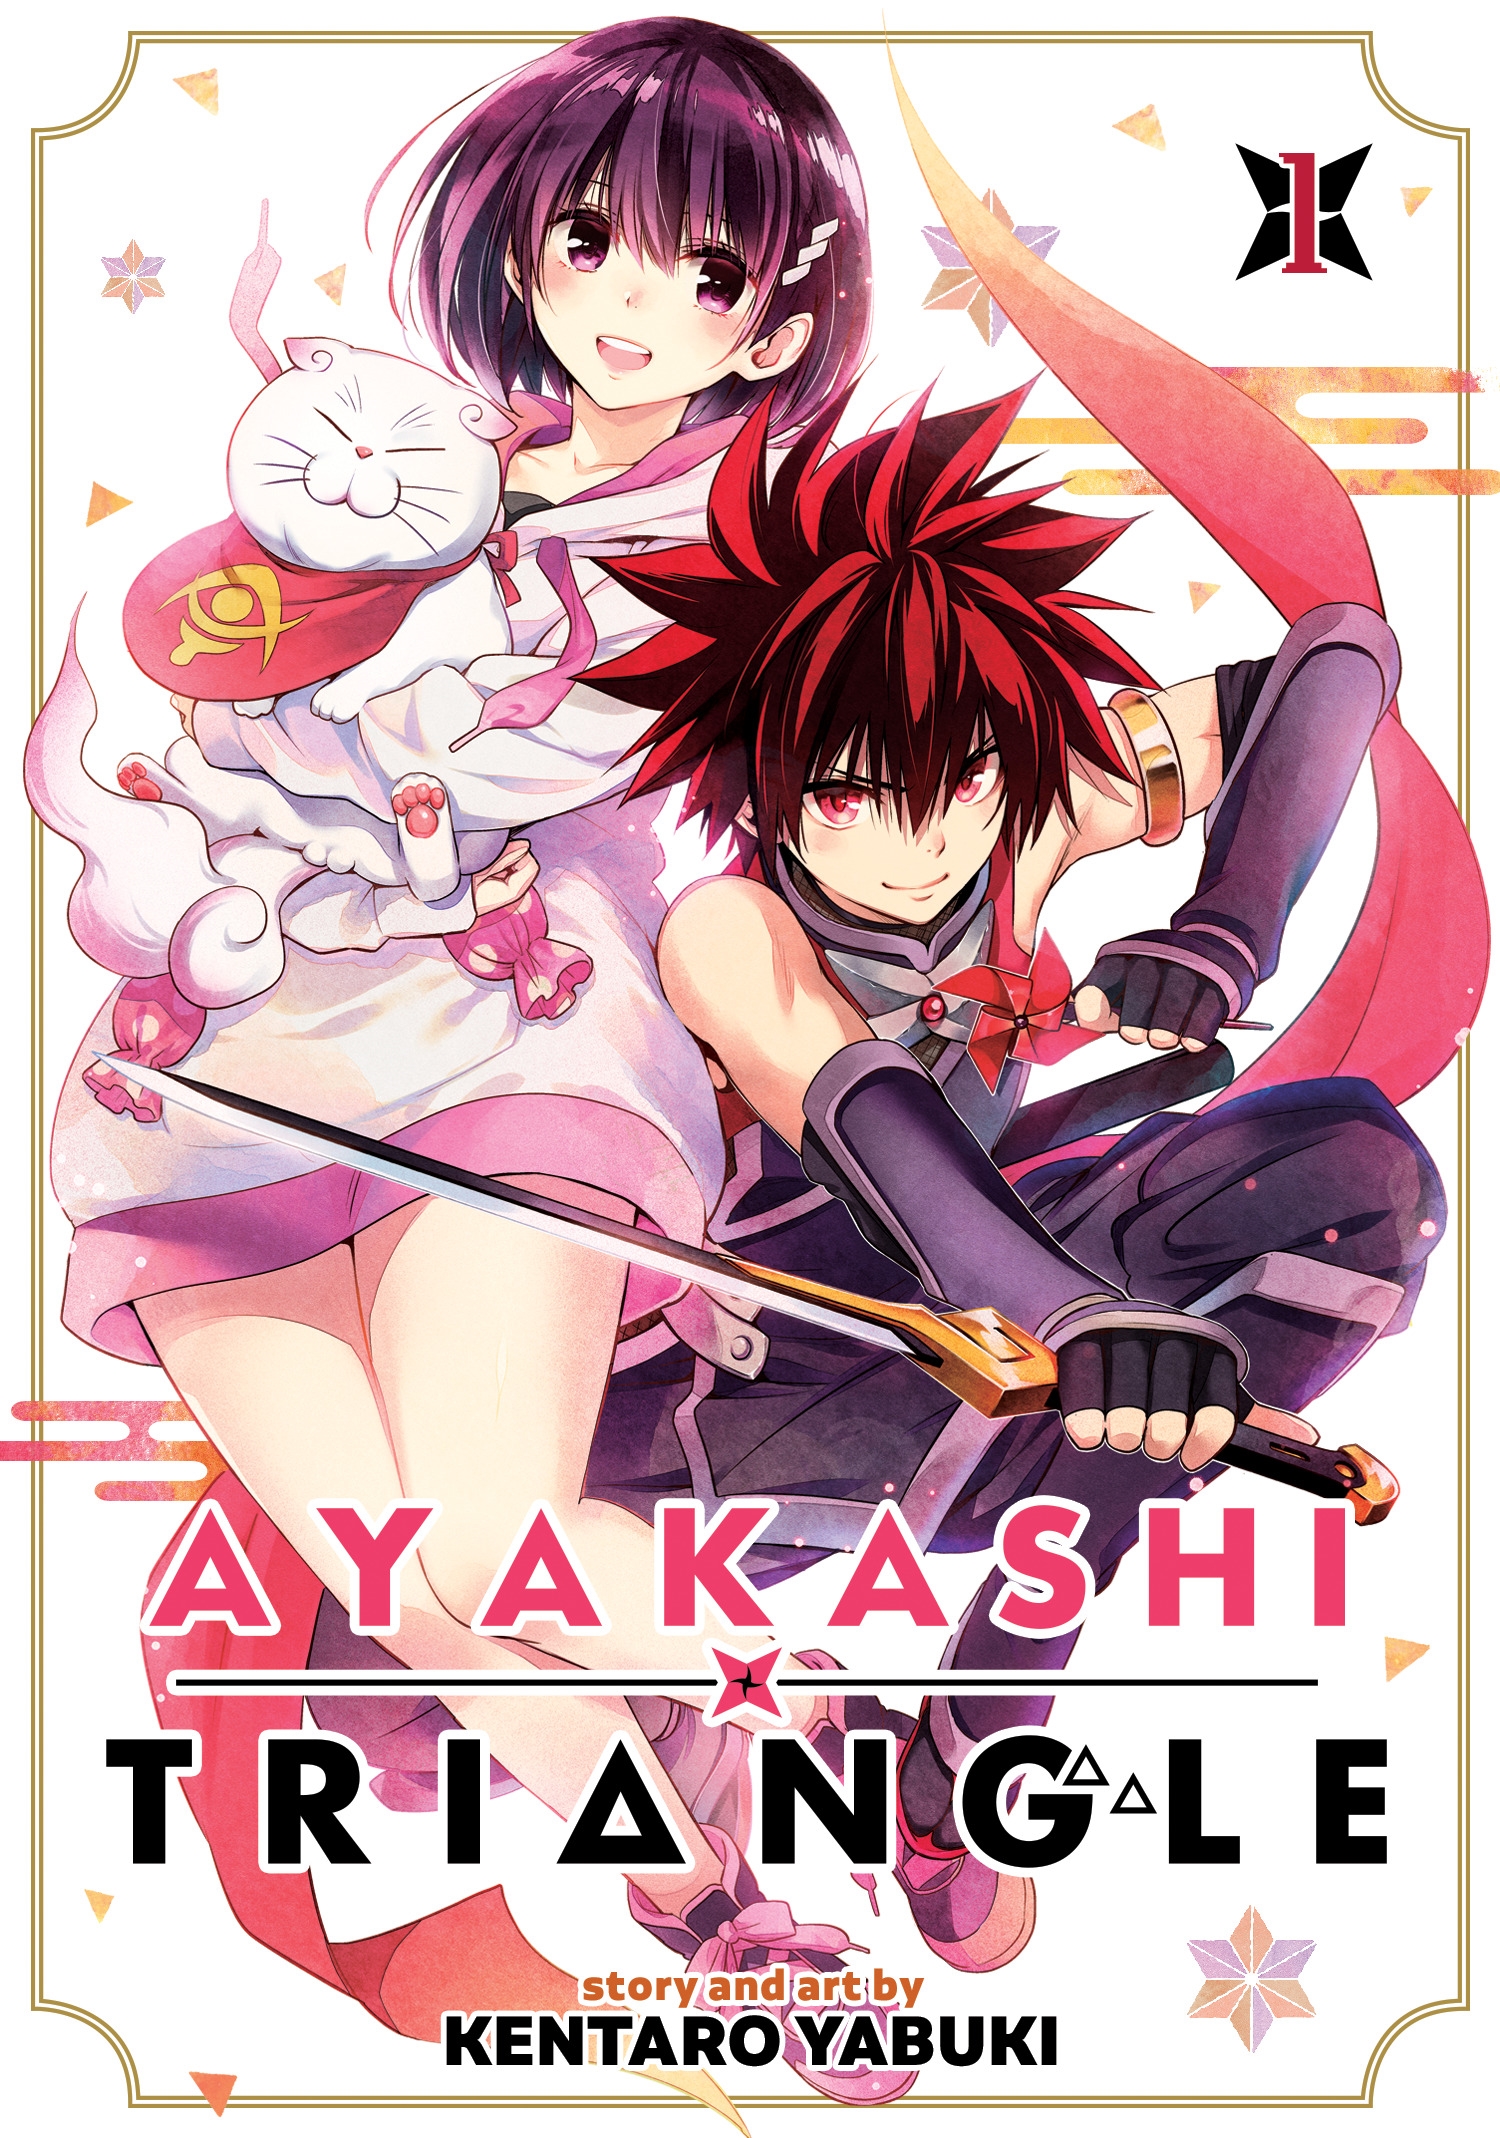 Ayakashi Triangle by Kentaro Yabuki. published by Seven Seas Entertainment